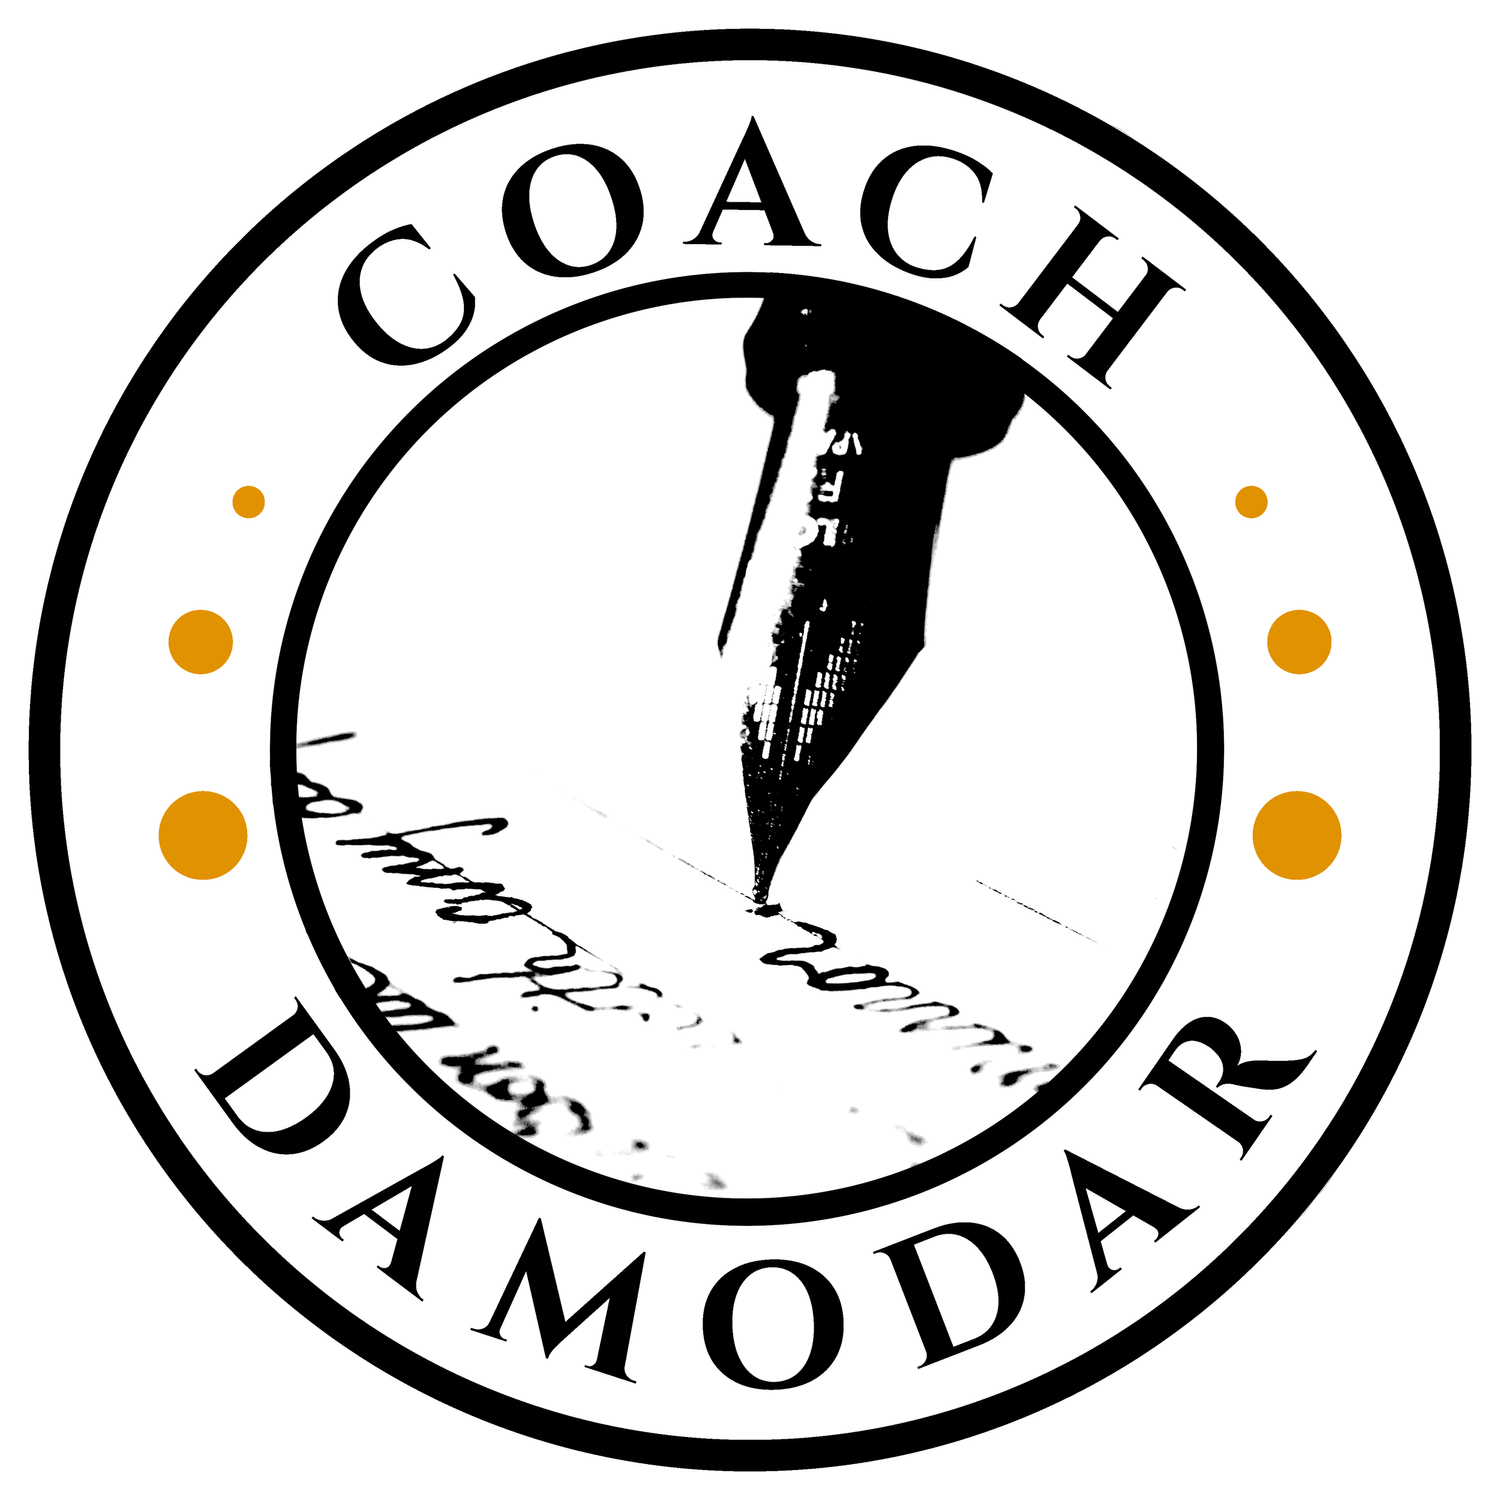 Coach Damodar